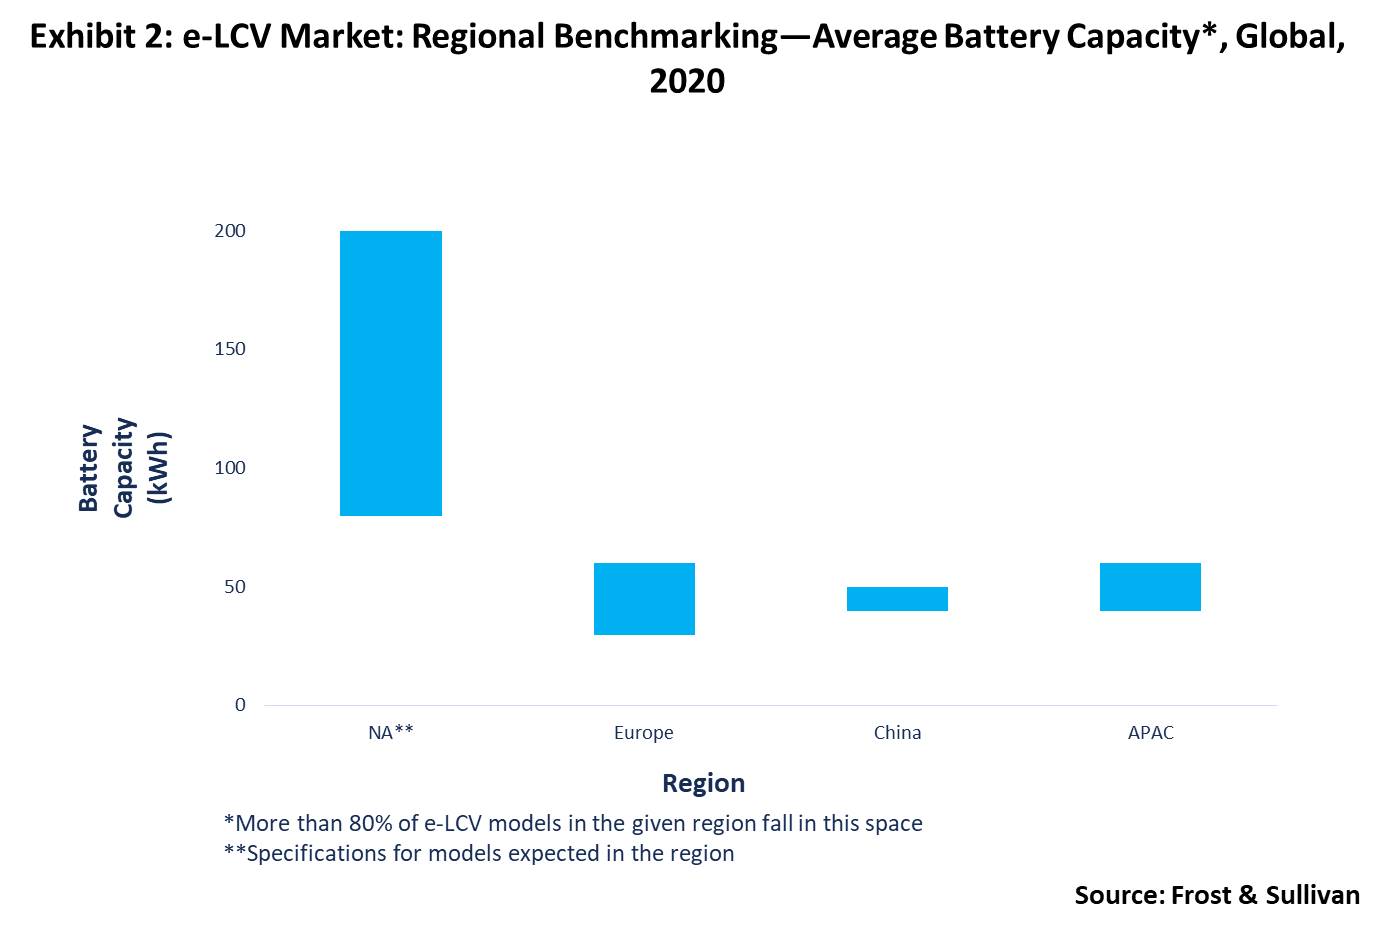 Average battery capacity of global e-LCV